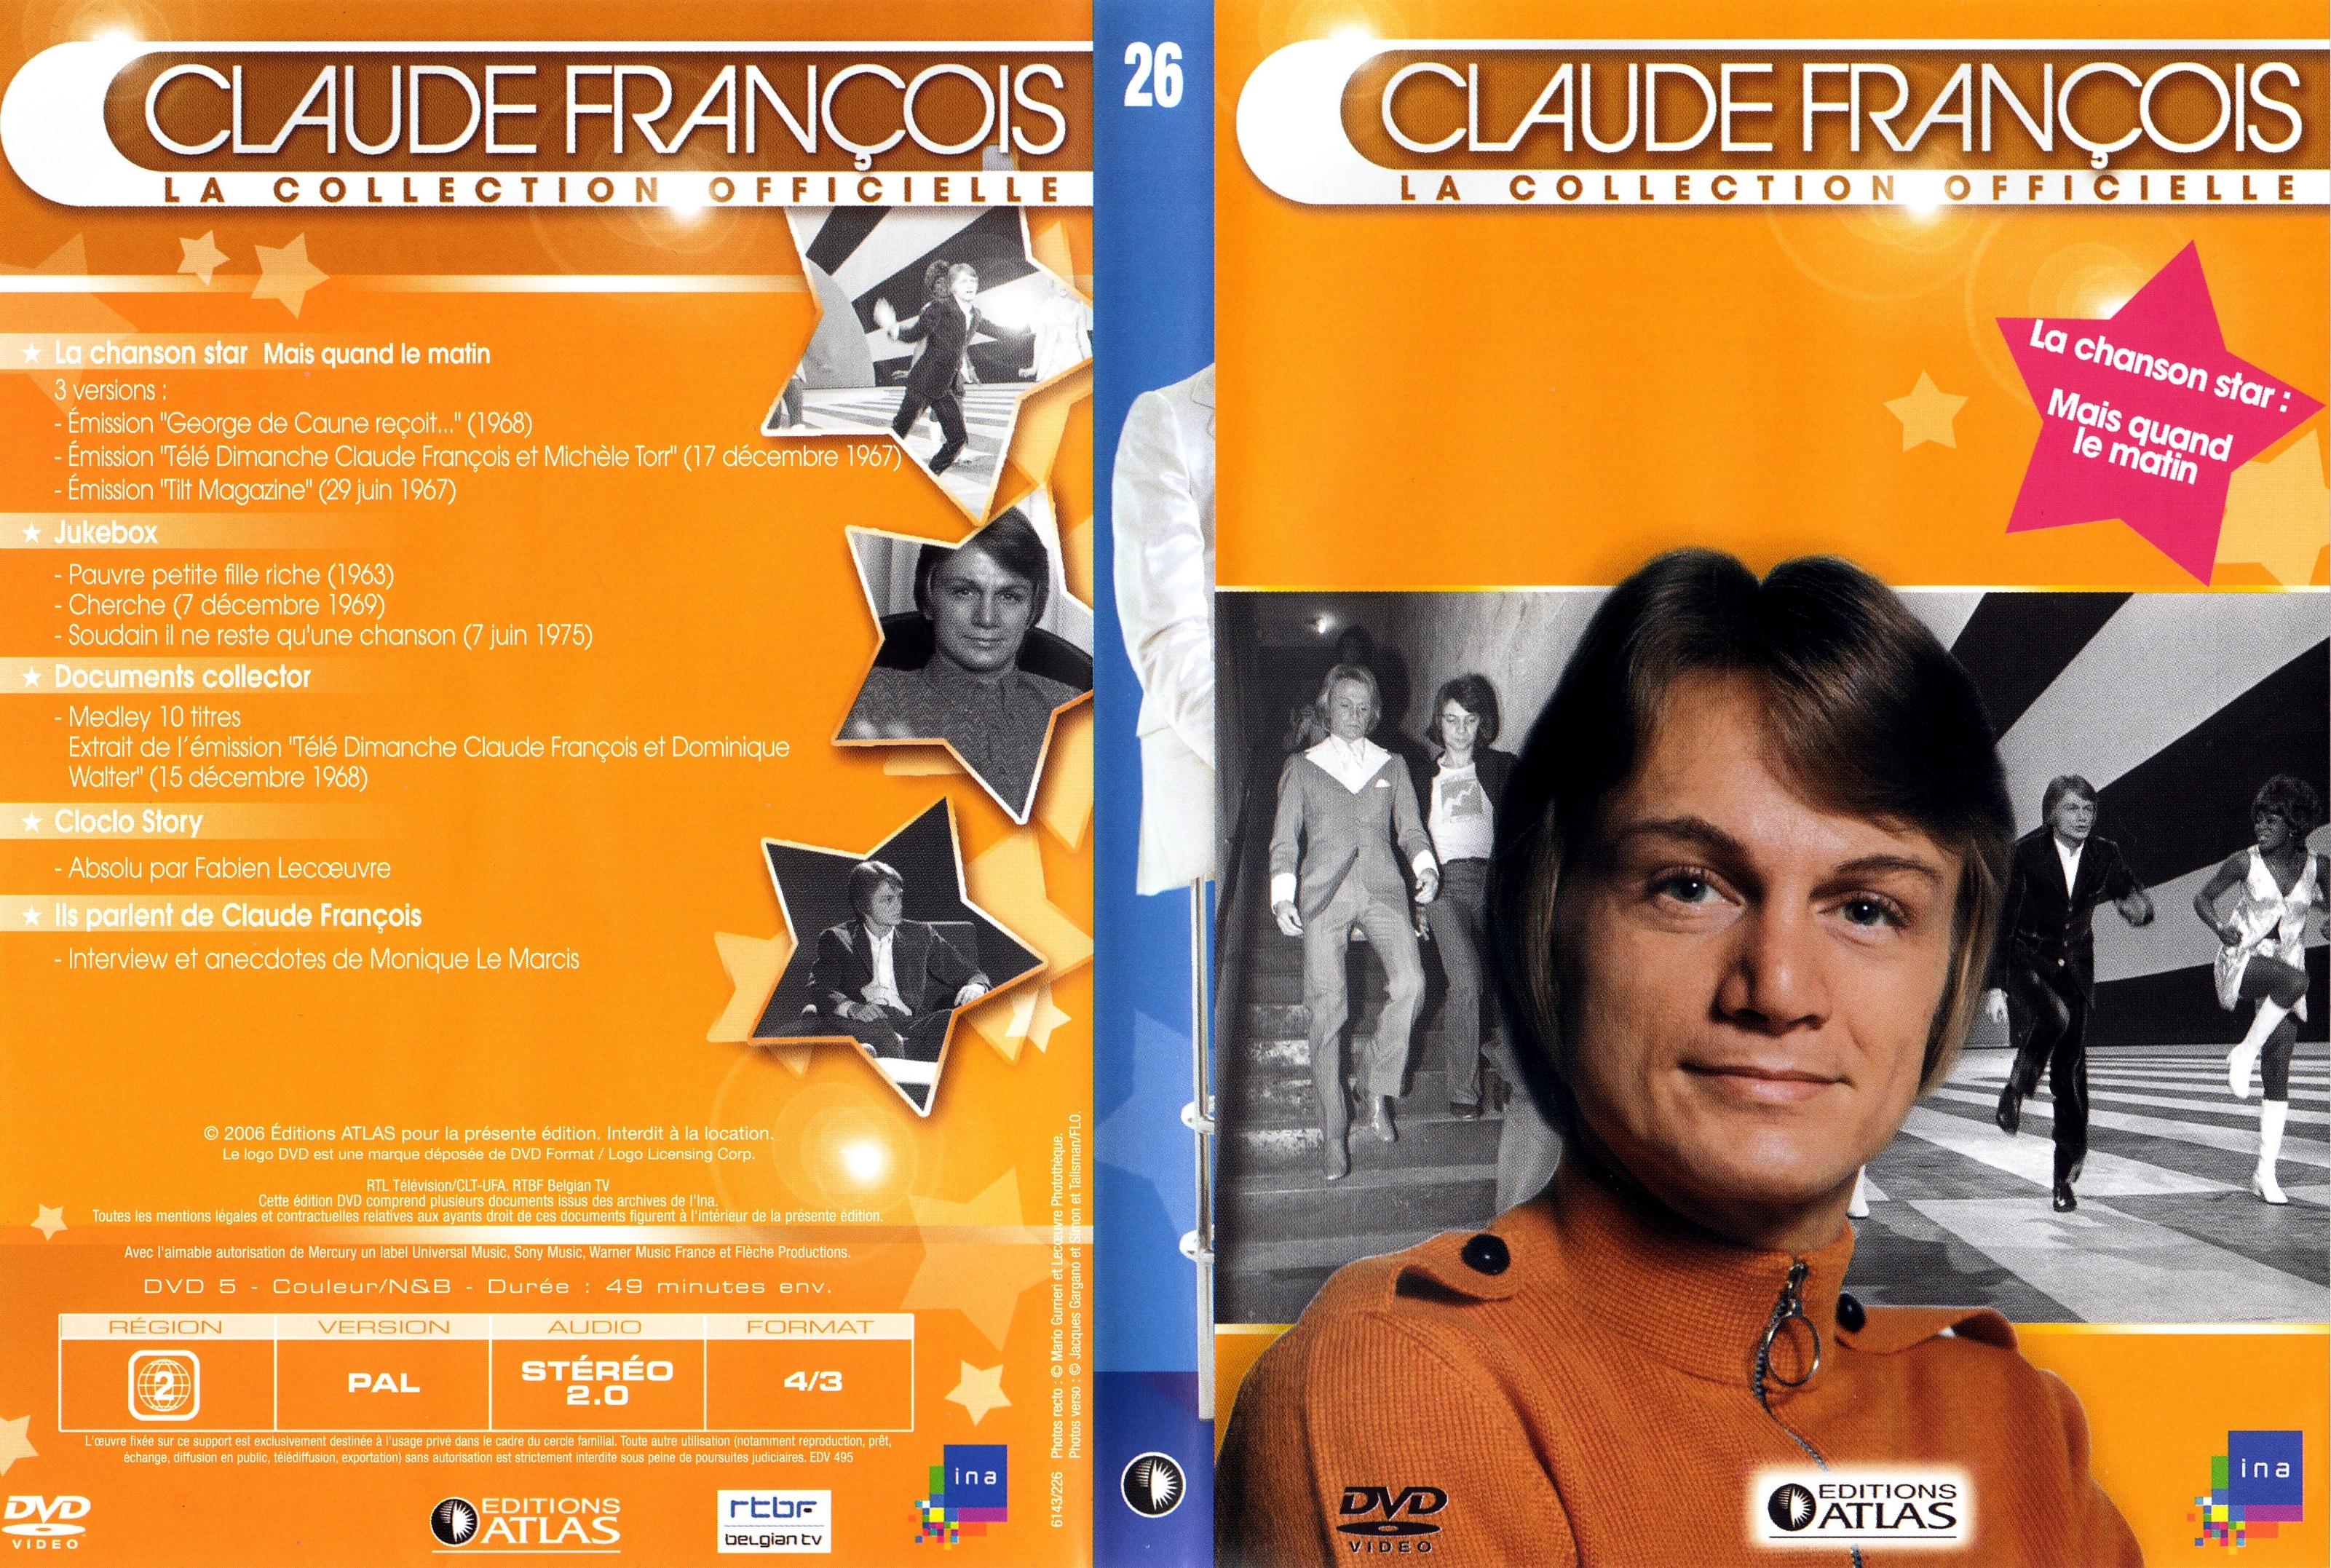 Jaquette DVD Claude Francois la collection officielle vol 26